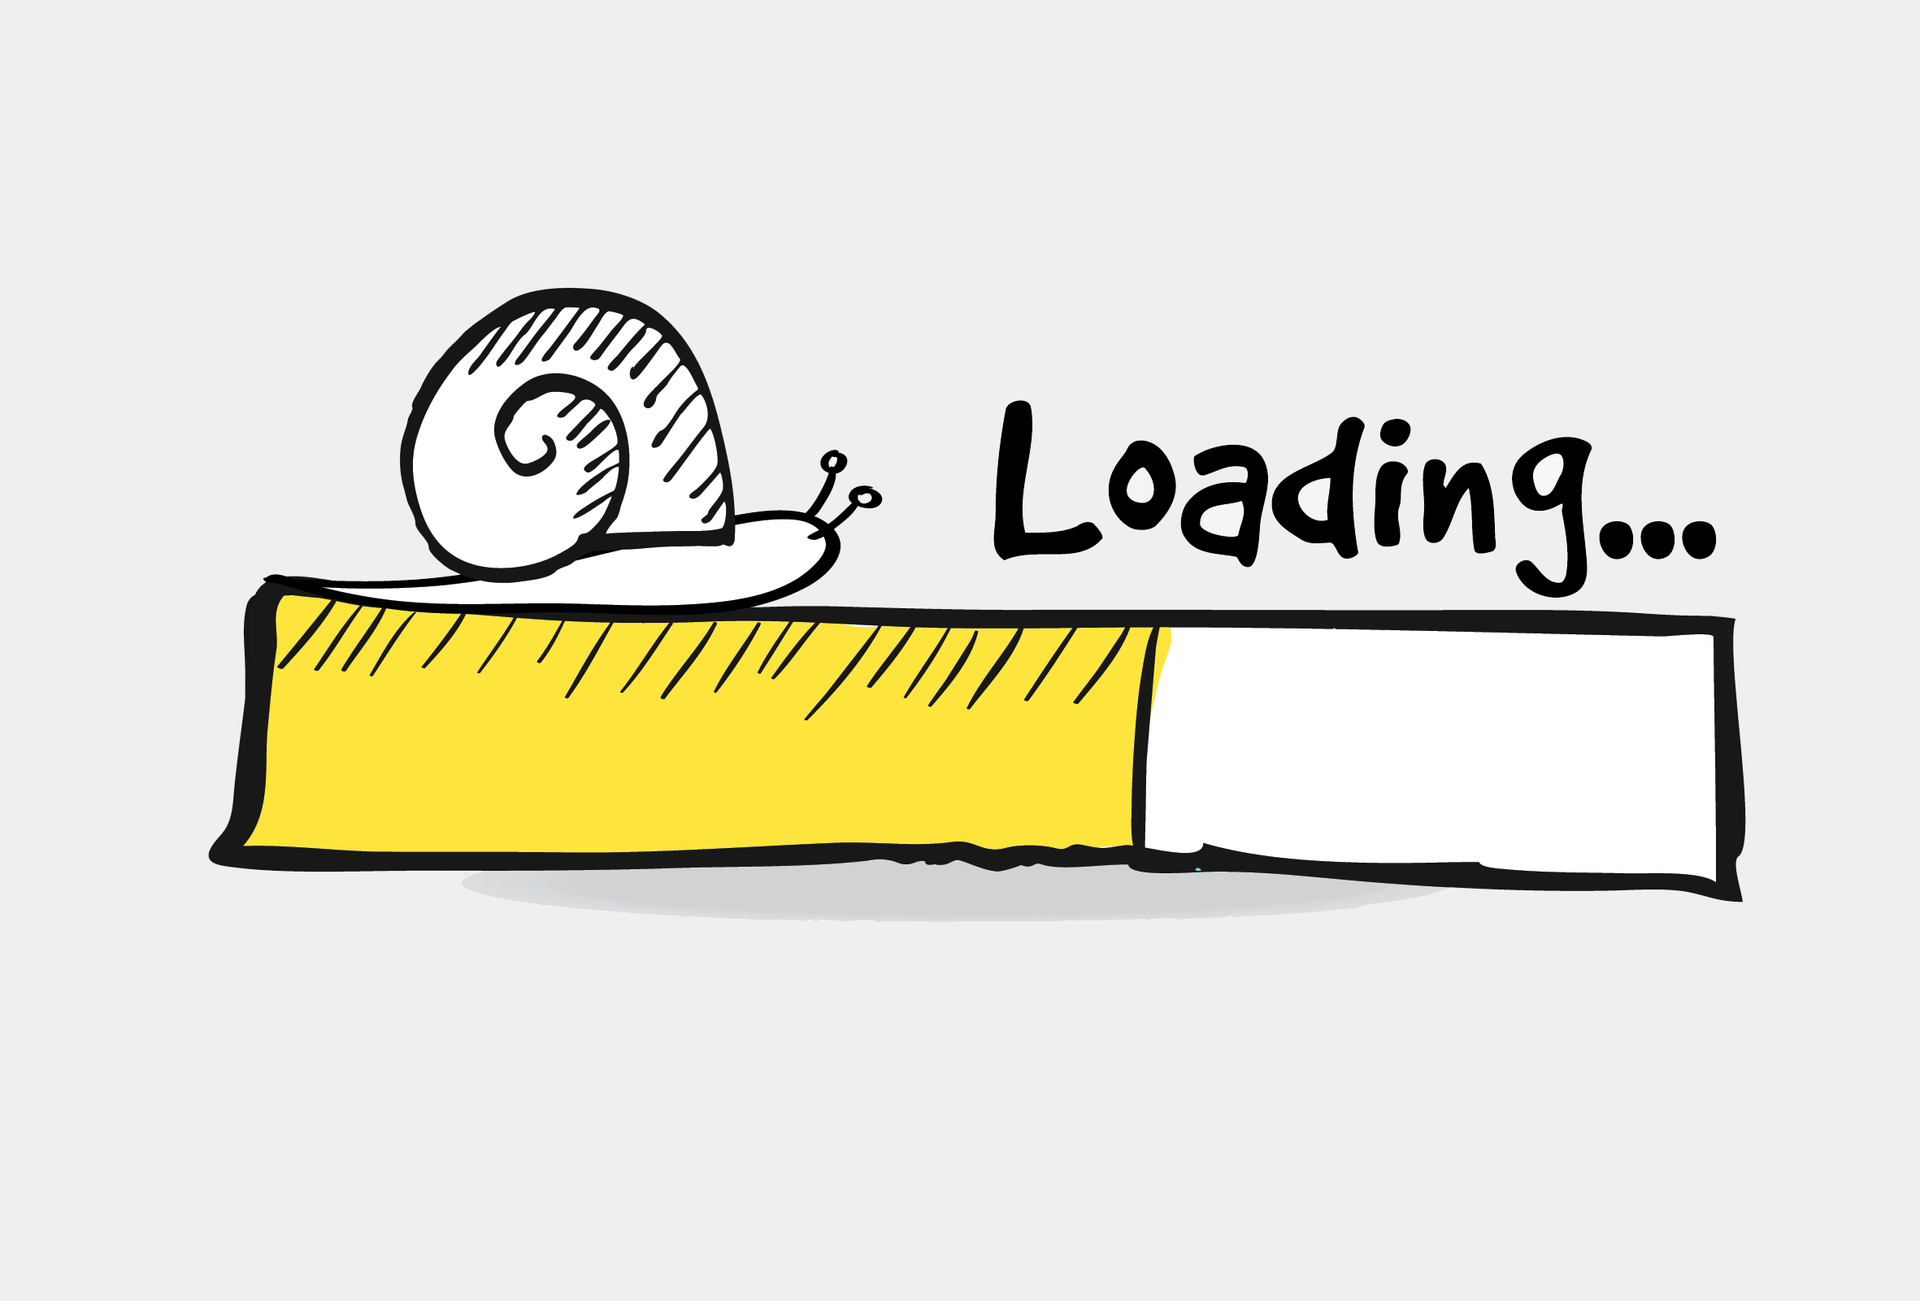 Dấu hiệu đầu tiên báo động thương hiệu cần nâng cấp website là tốc độ website load chậm.